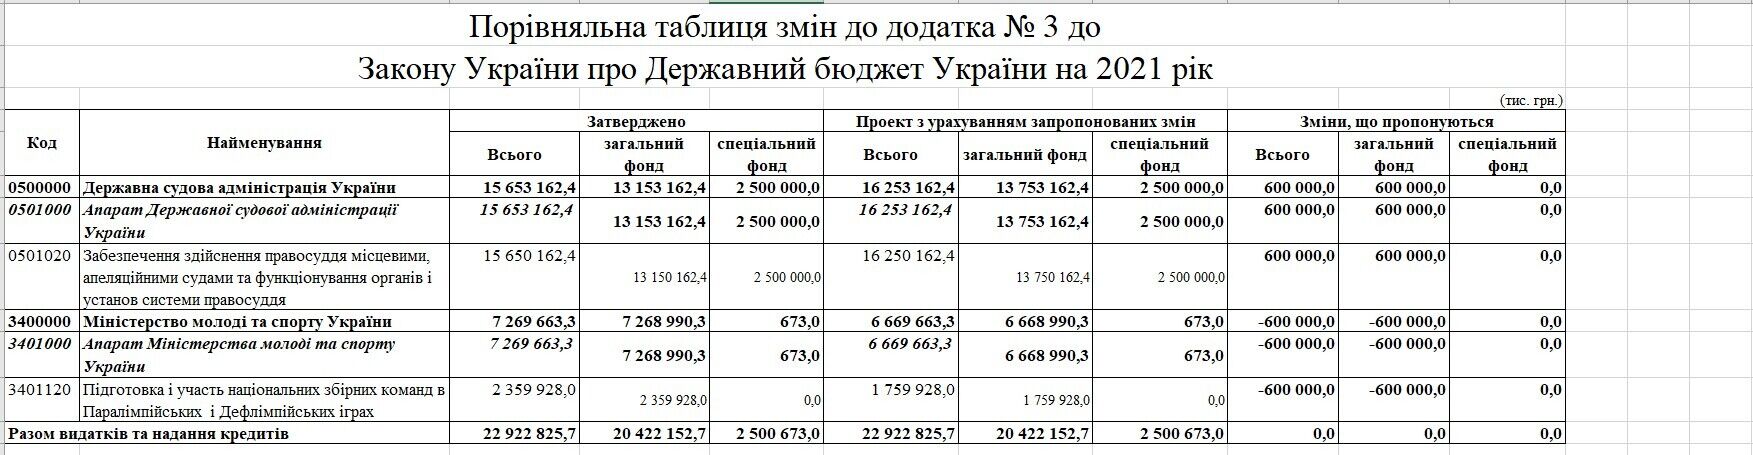 В Україні заберуть 600 млн грн у спортсменів і витратять їх на суди: законопроєкт підтримали в першому читанні